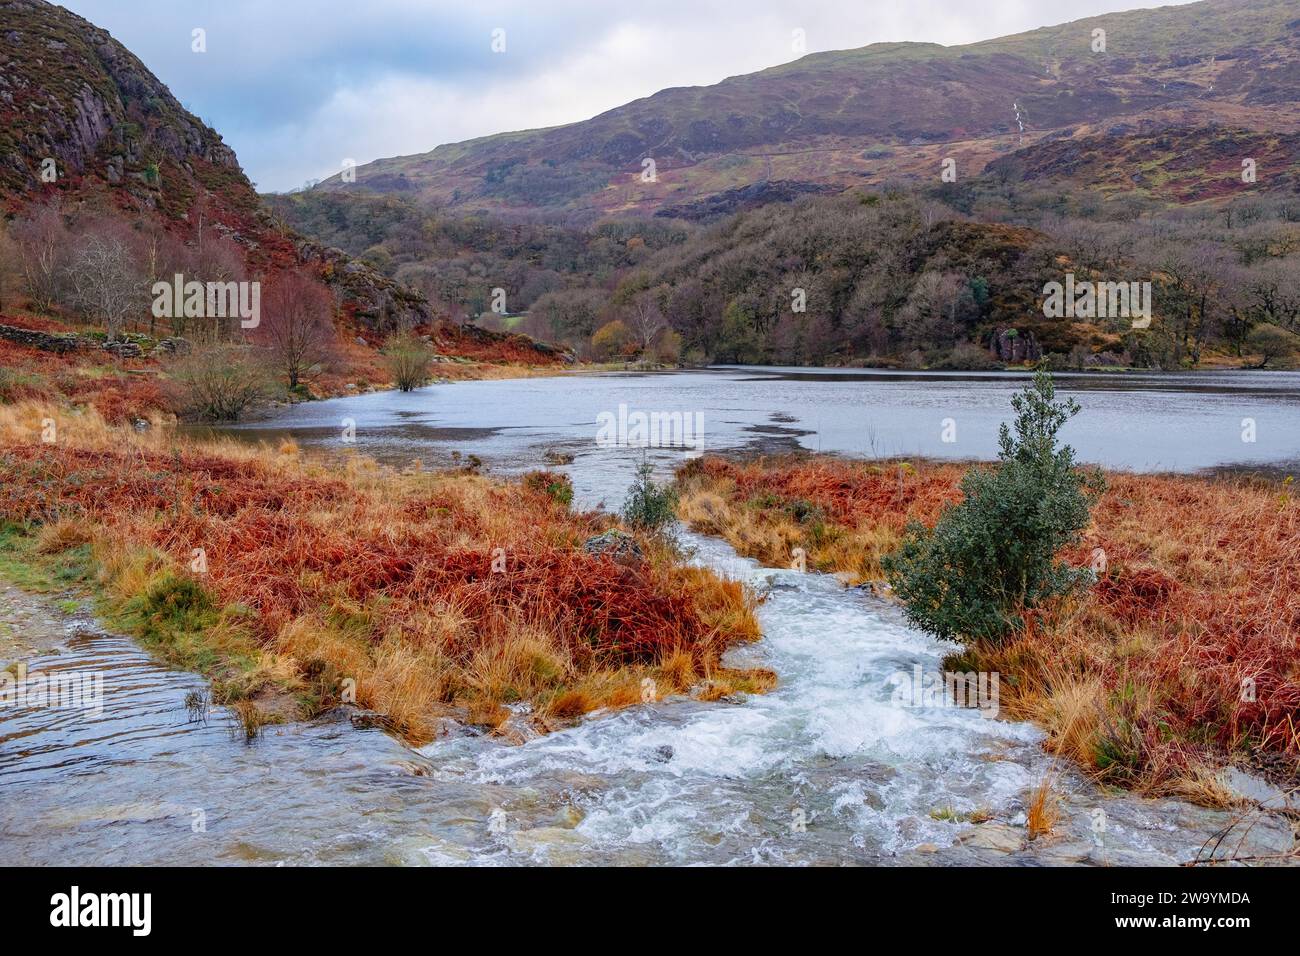 Petit ruisseau se jetant dans le lac Llyn Dinas dans la vallée de Nant Gwynant en hiver dans le parc national de Snowdonia. Nantgwynant, Bethesda, Gwynedd, nord du pays de Galles, Royaume-Uni Banque D'Images